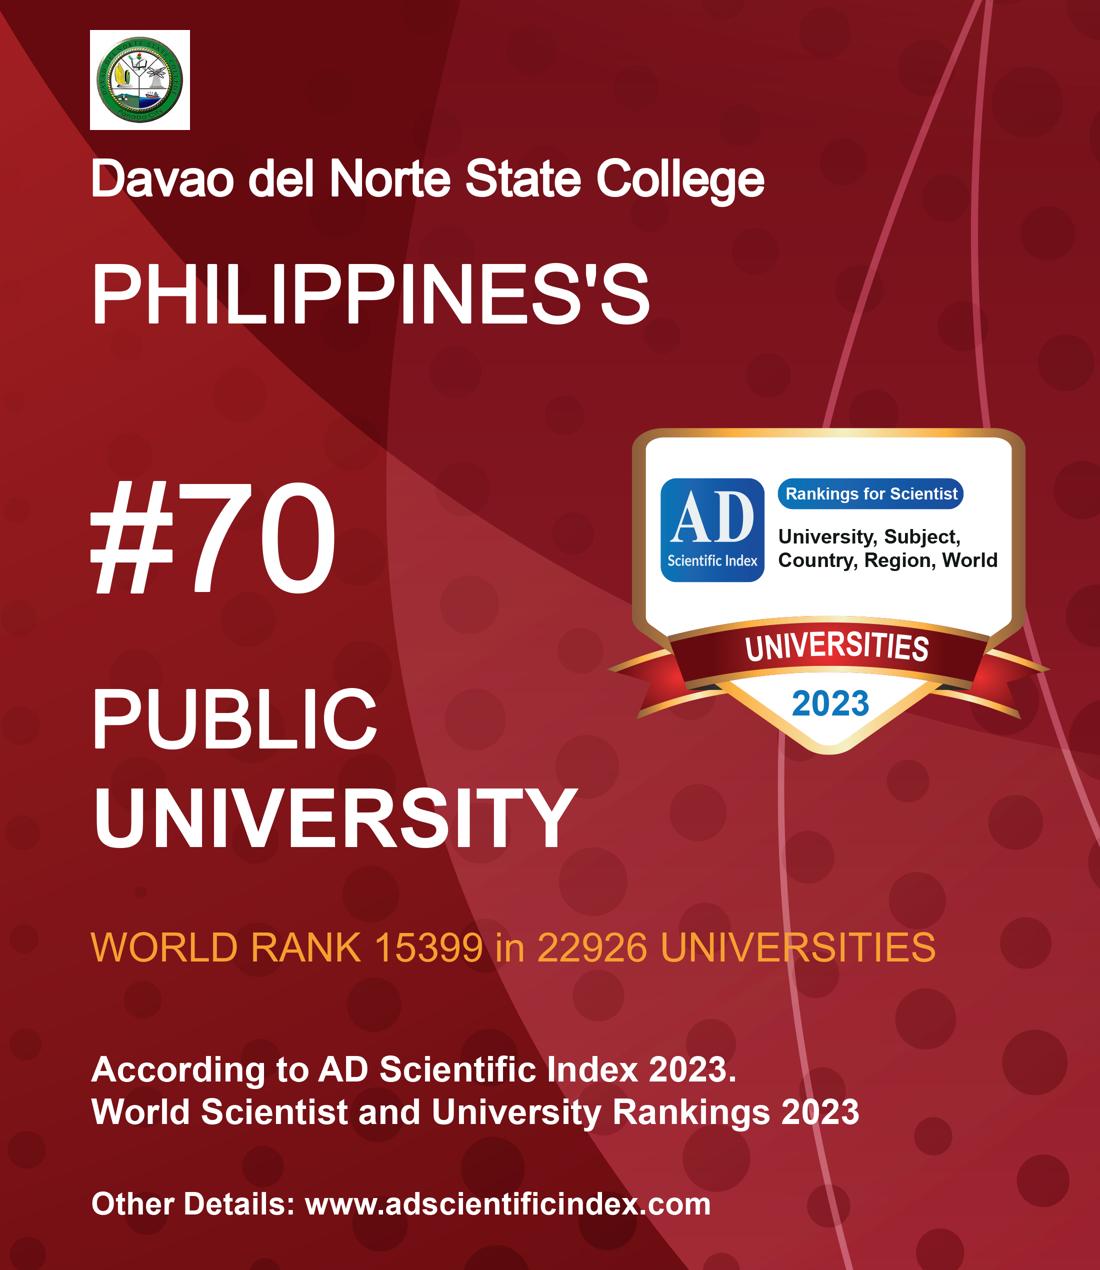 Davao del Norte State College